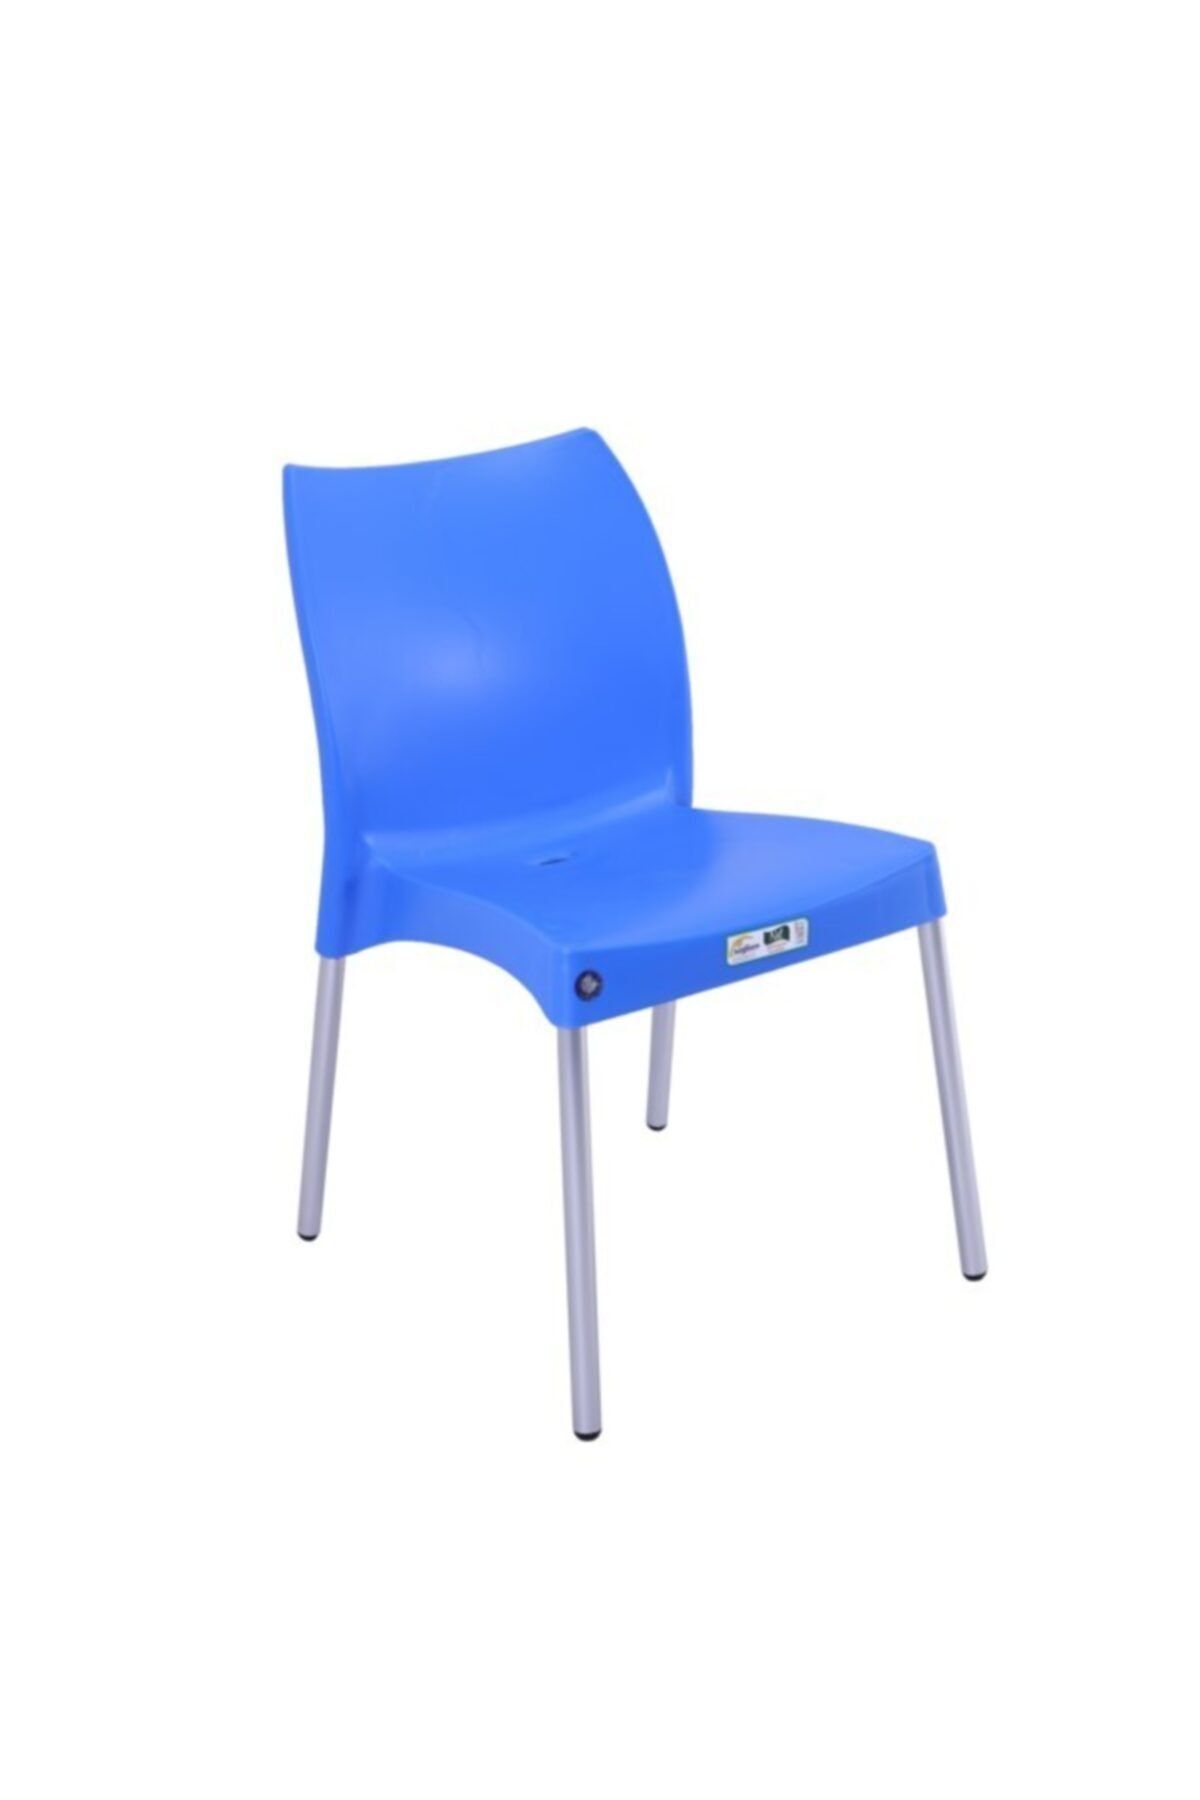 Mandella Nil Sandalye Alüminyum Ayaklı Mavi